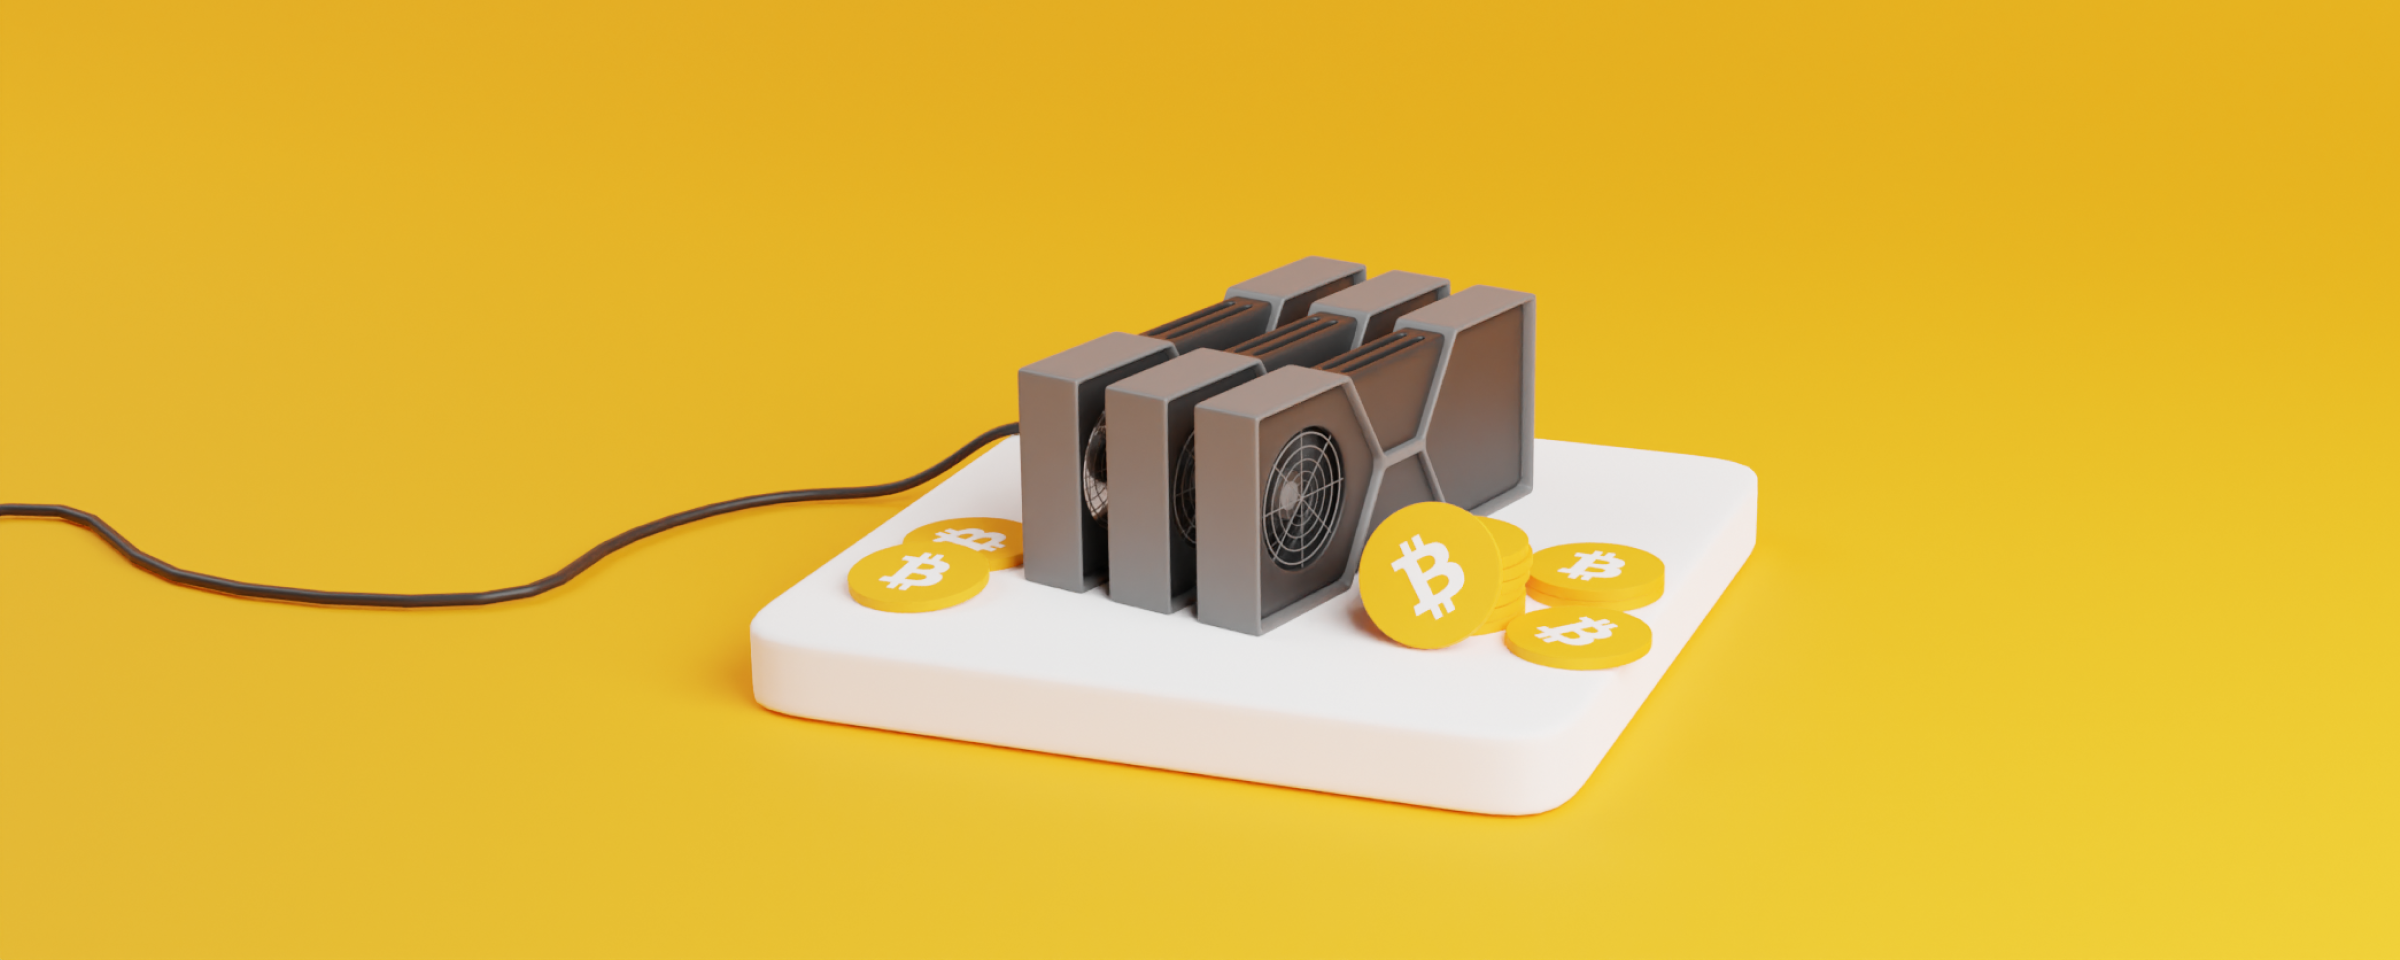 Hvordan sikres Bitcoin-blokkjeden?